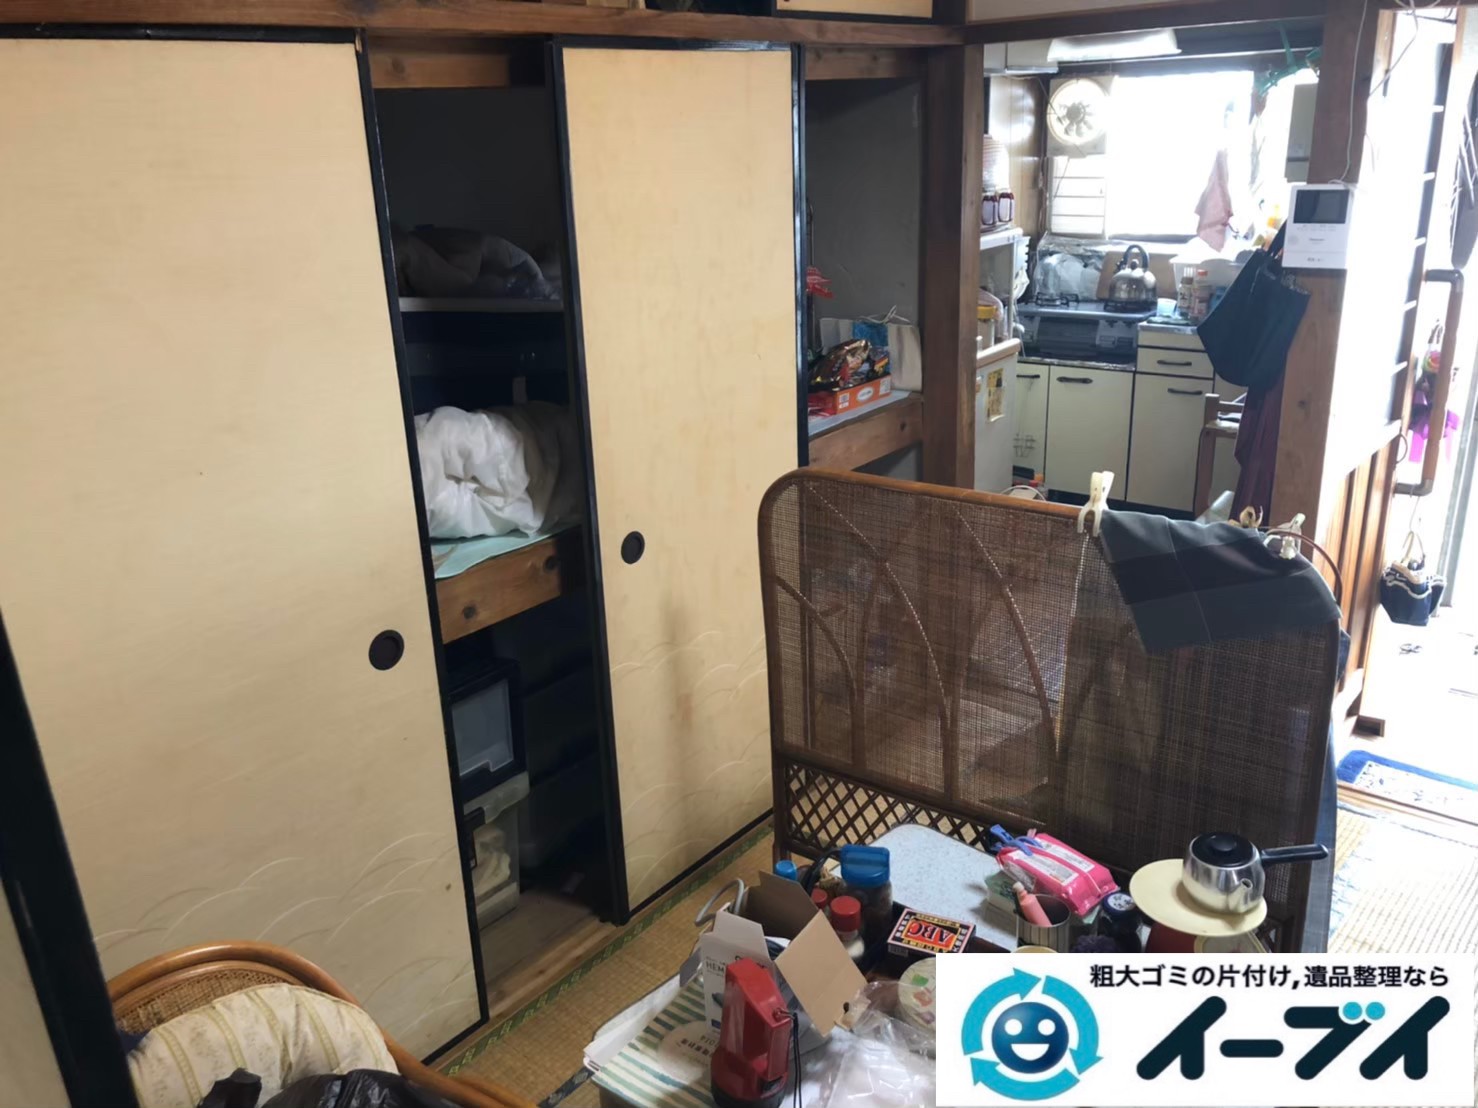 2020年8月17日大阪府大阪市北区で施設に伴い、お家の家財道具を一式処分させていただきました。写真3